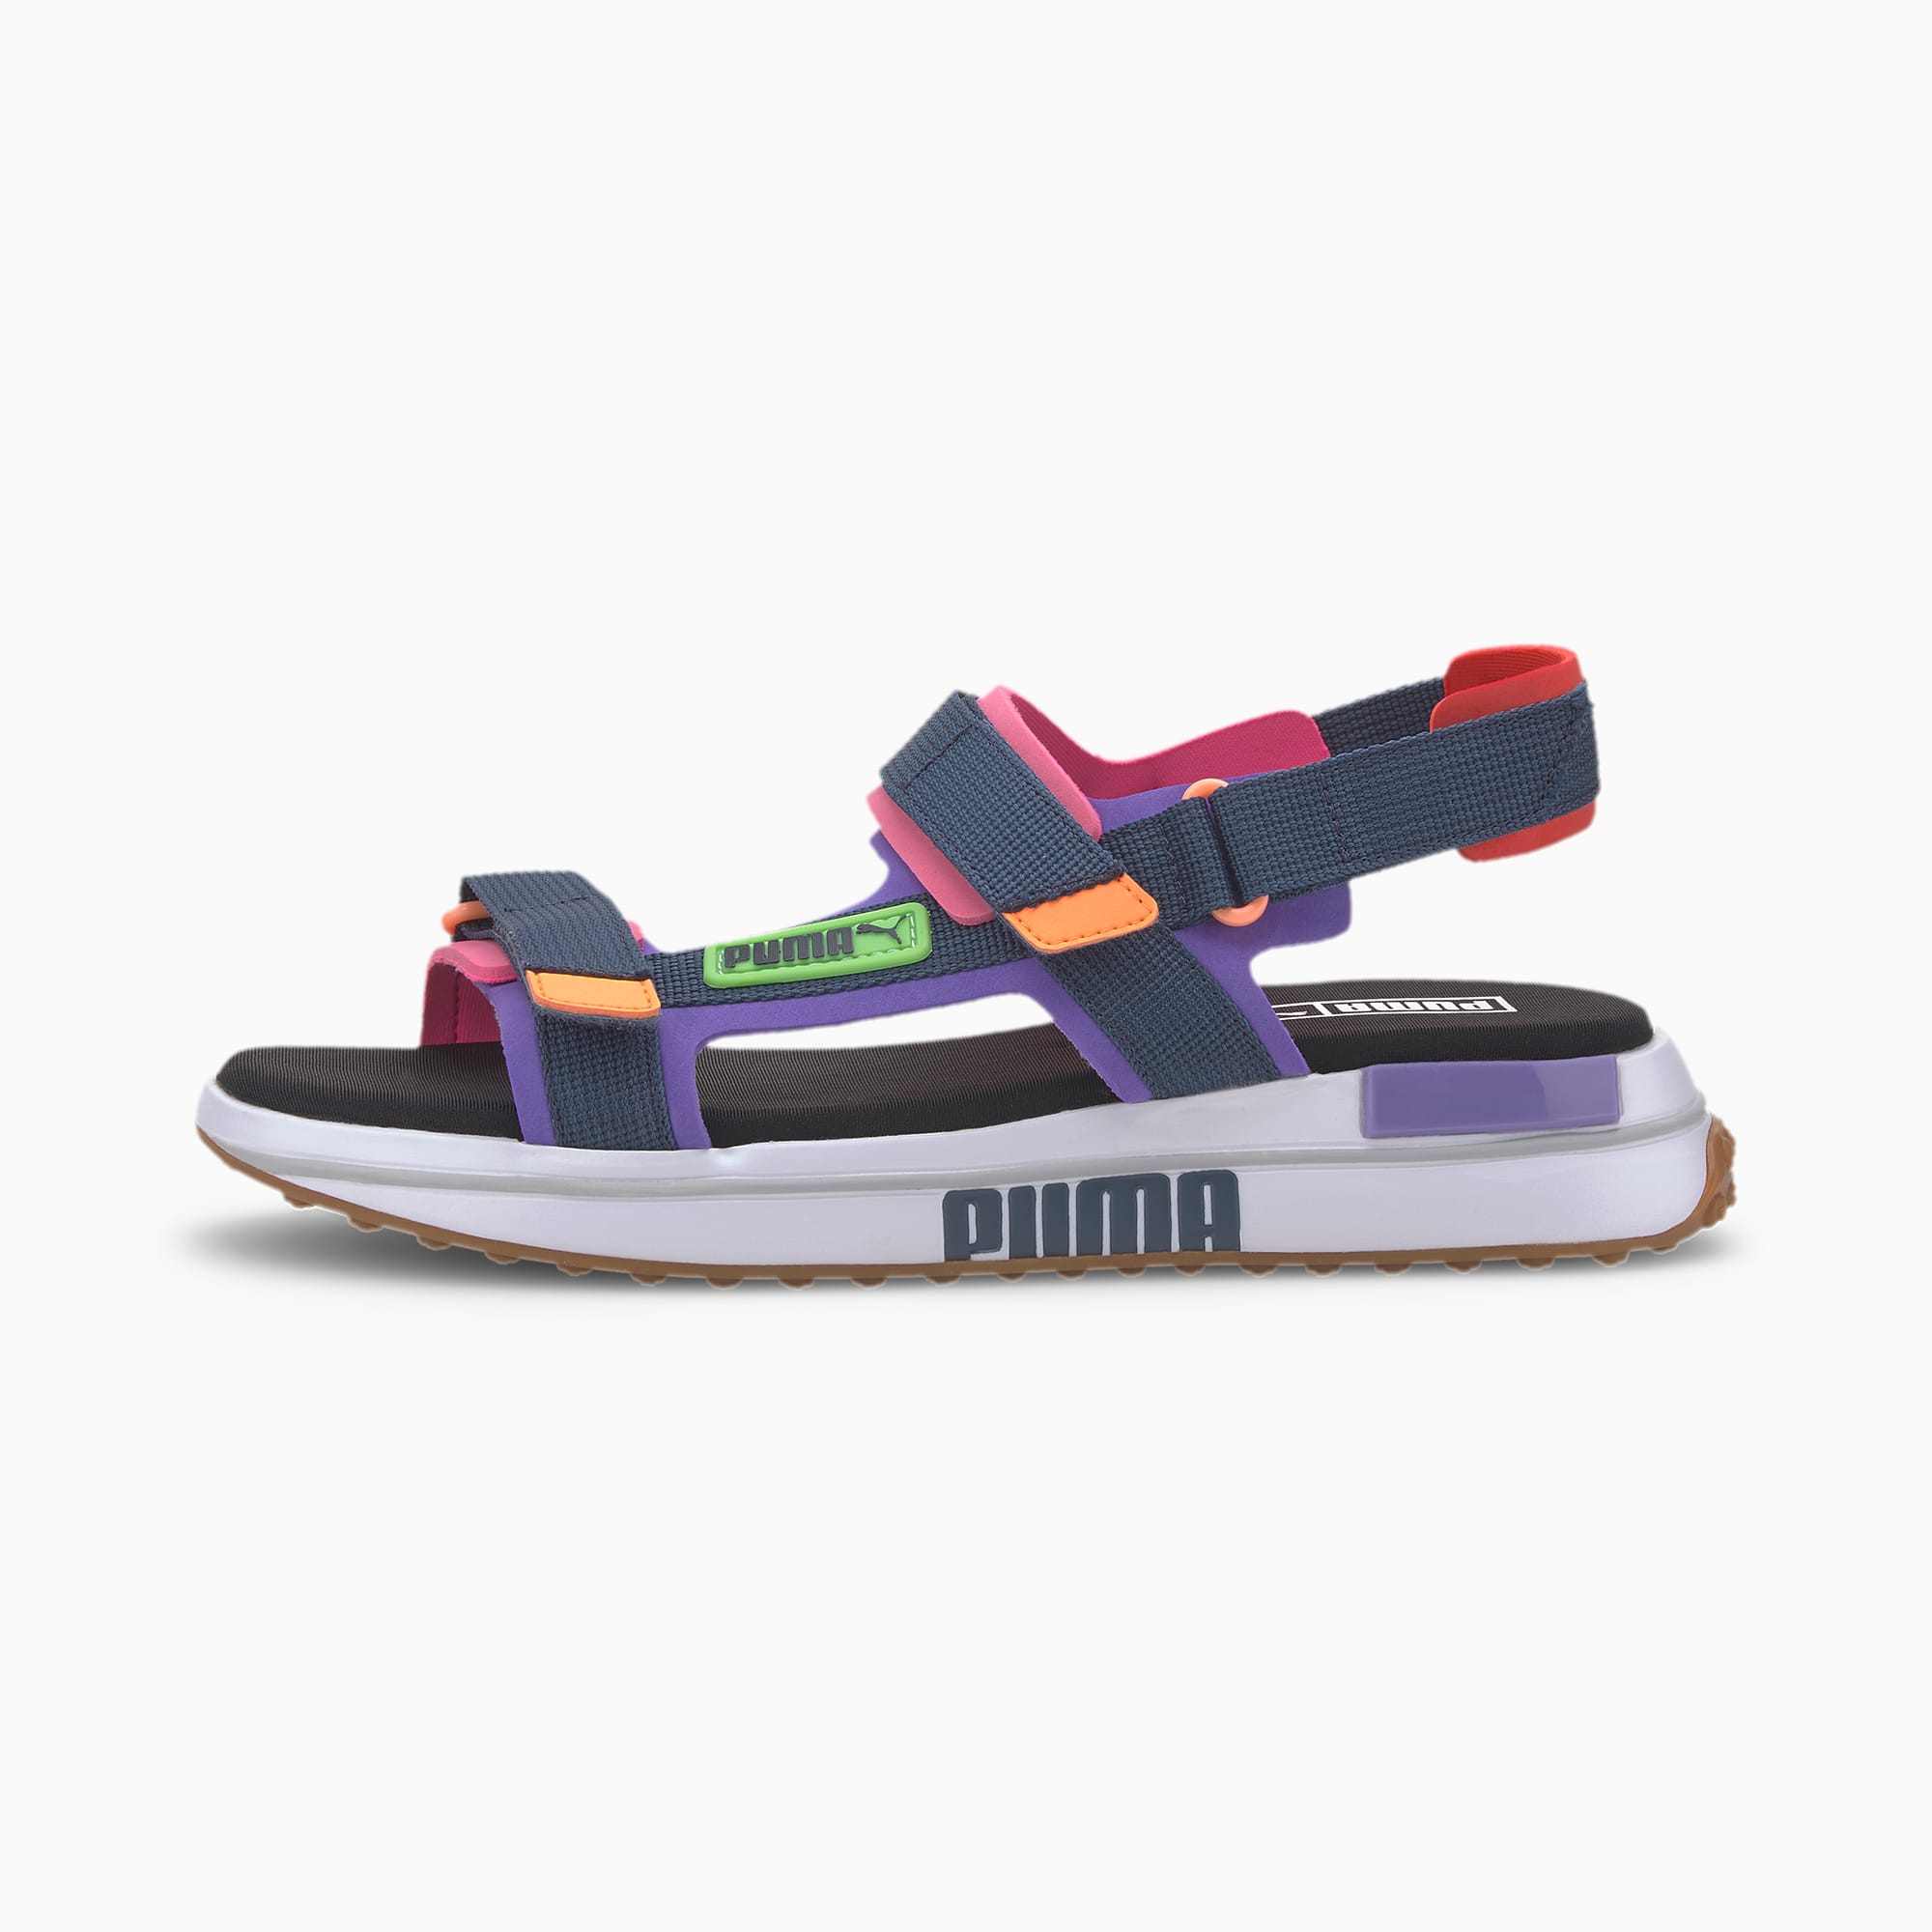 pics of puma sandals